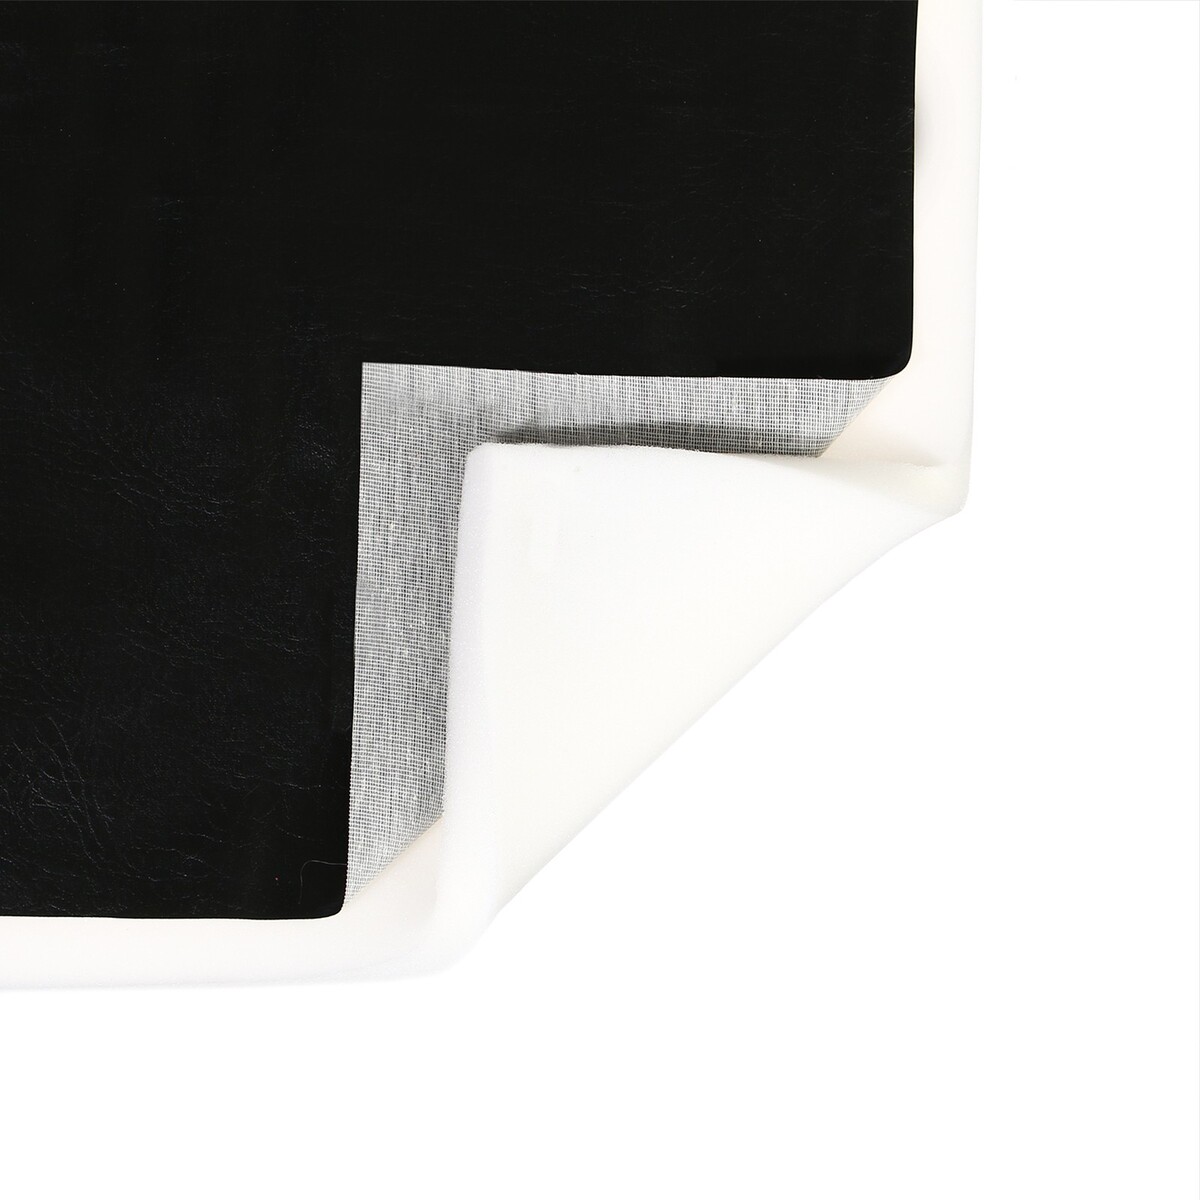 Комплект для перетяжки мебели, 100 × 100 см: иск.кожа, поролон 20 мм, черный комплект для перетяжки мебели 50 × 50 см иск кожа поролон 20 мм чёрный